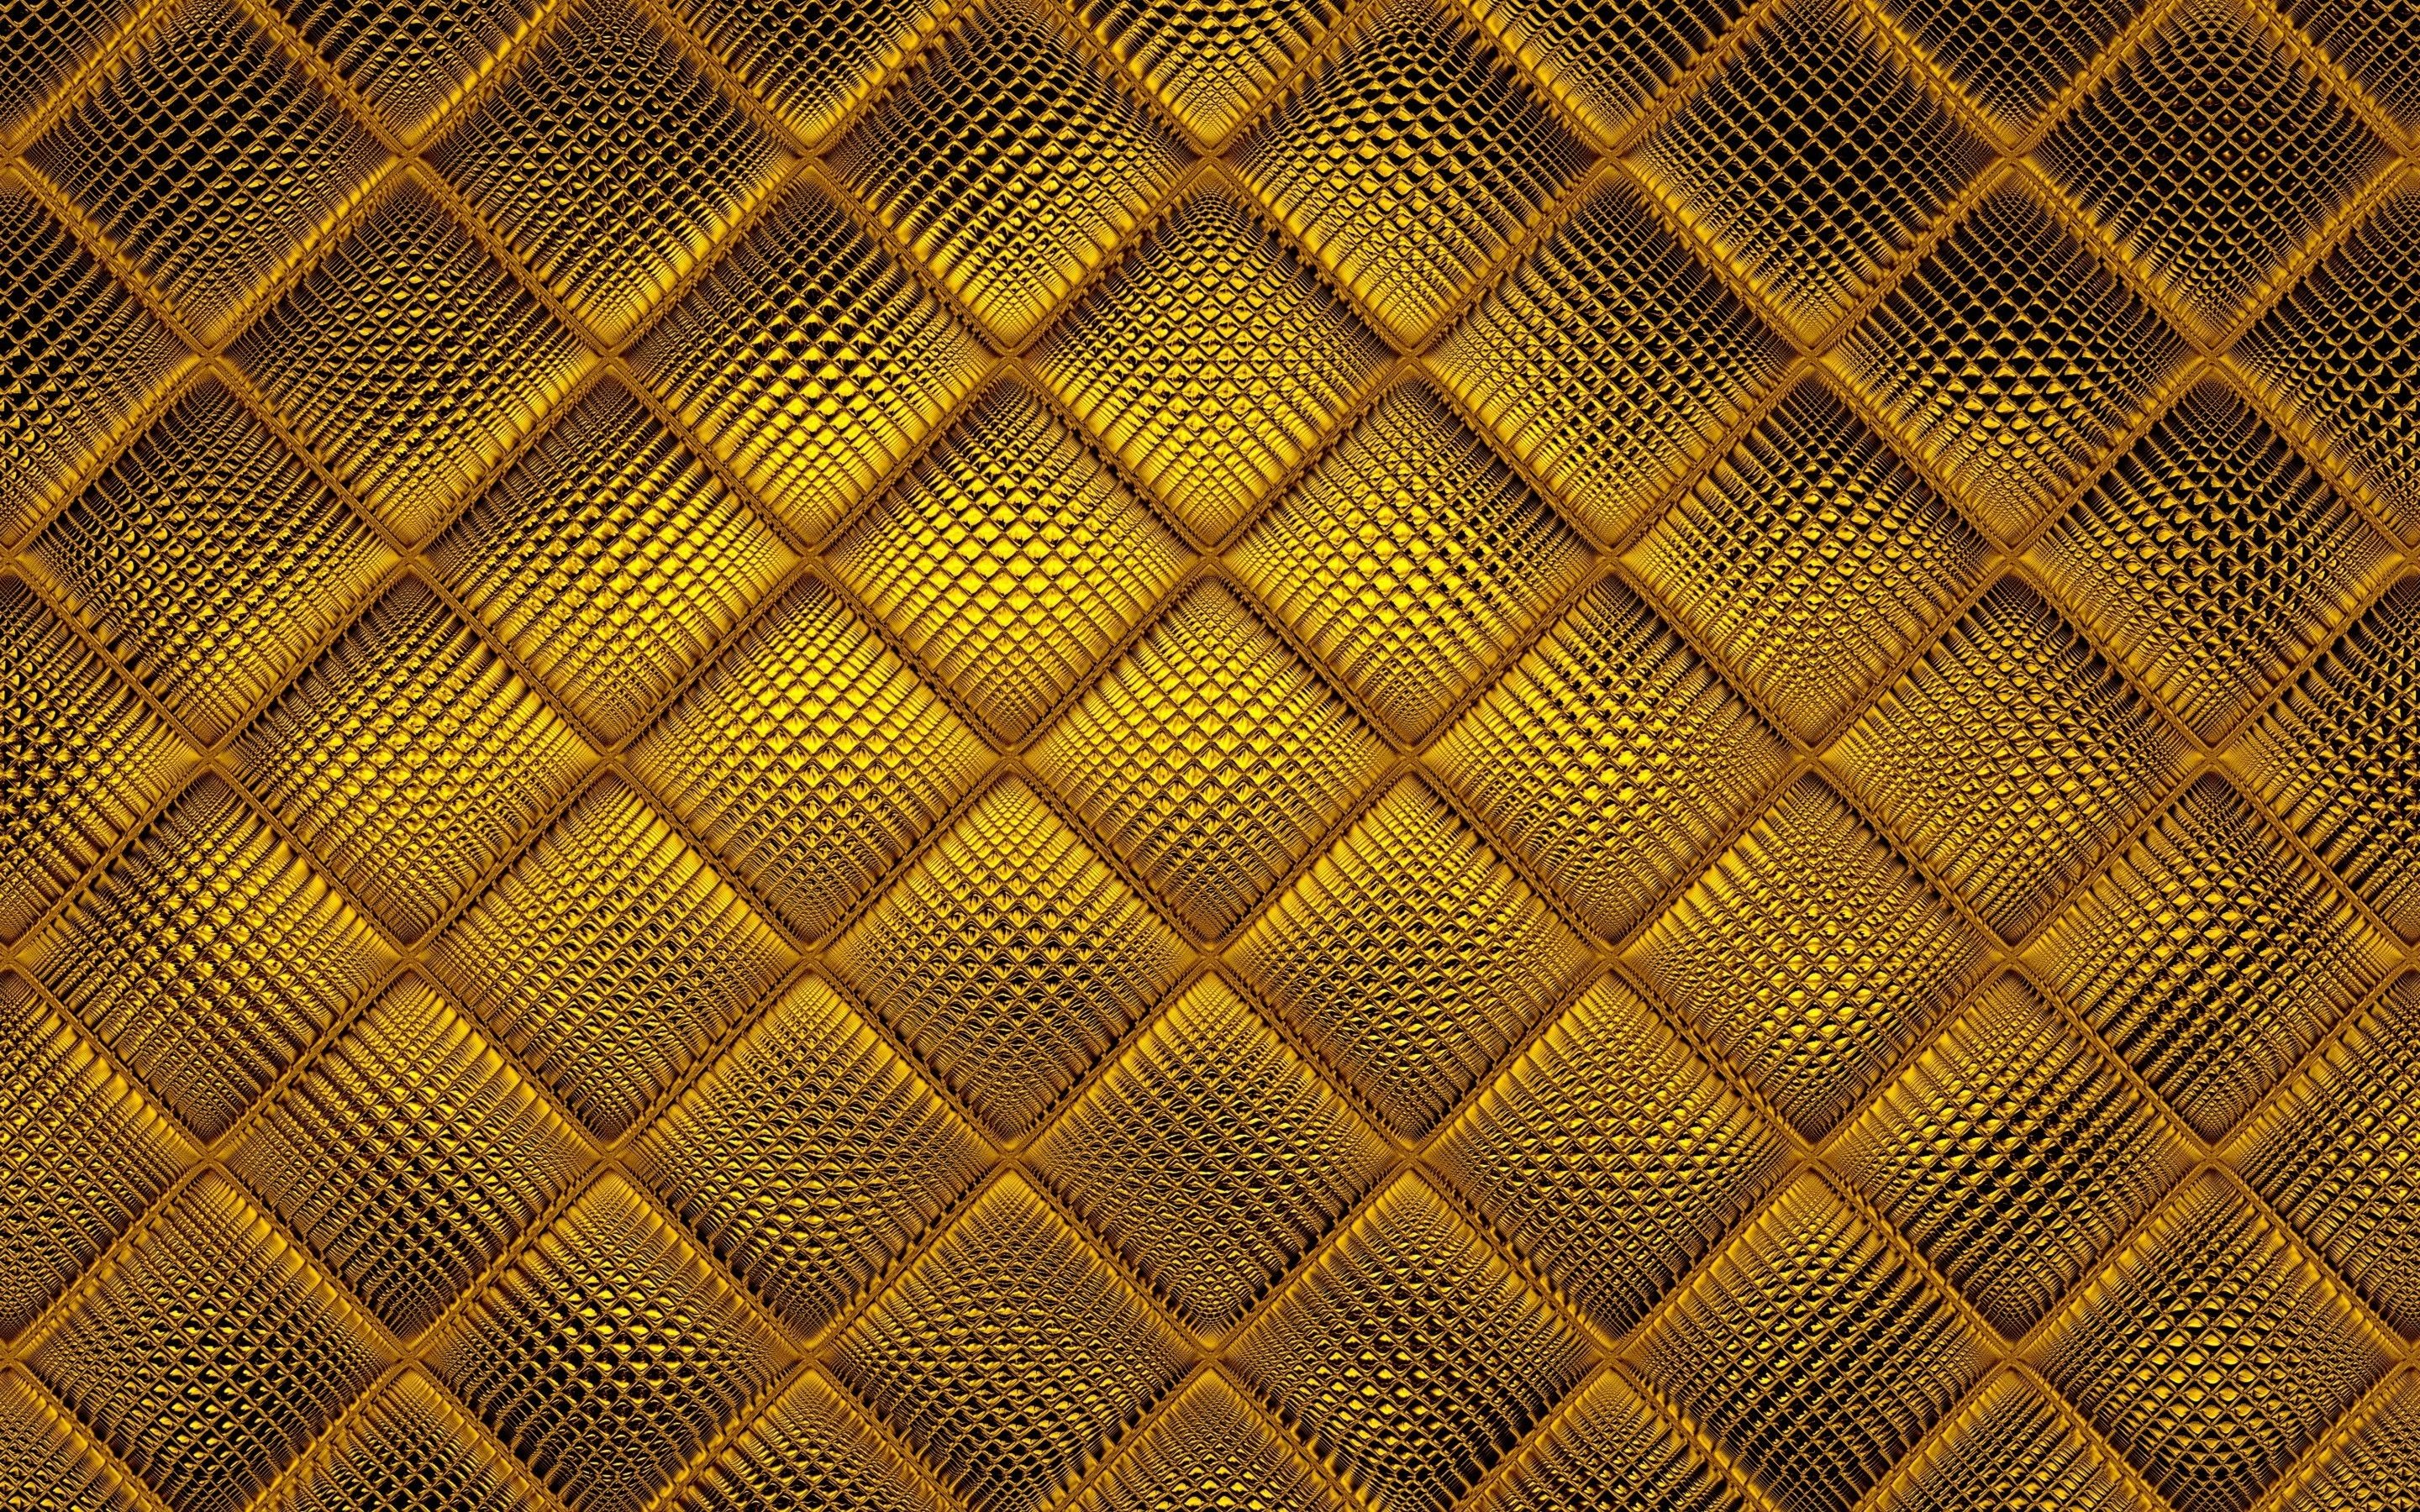 Hình nền vải vàng: Trải nghiệm sự sang trọng với hình nền vải vàng tuyệt đẹp. Bạn sẽ được hòa mình vào những hình ảnh vô cùng tinh tế và độc đáo, mang đến cho bạn một không gian làm việc hoàn hảo dành riêng cho bạn.